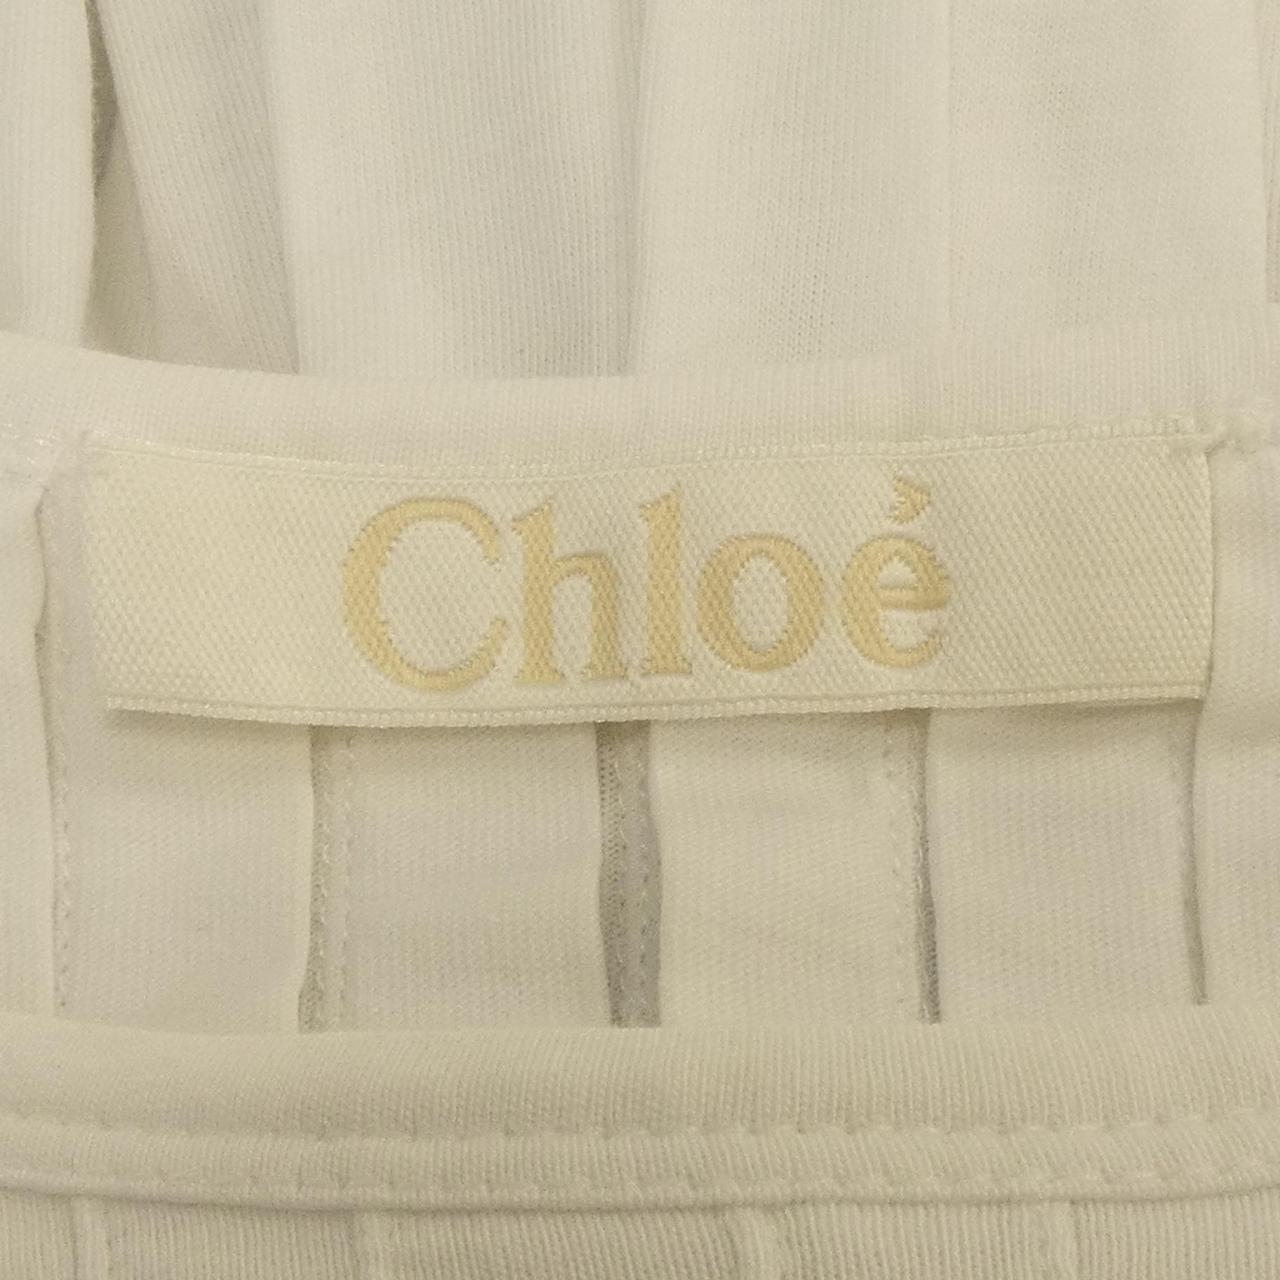 Chloe top